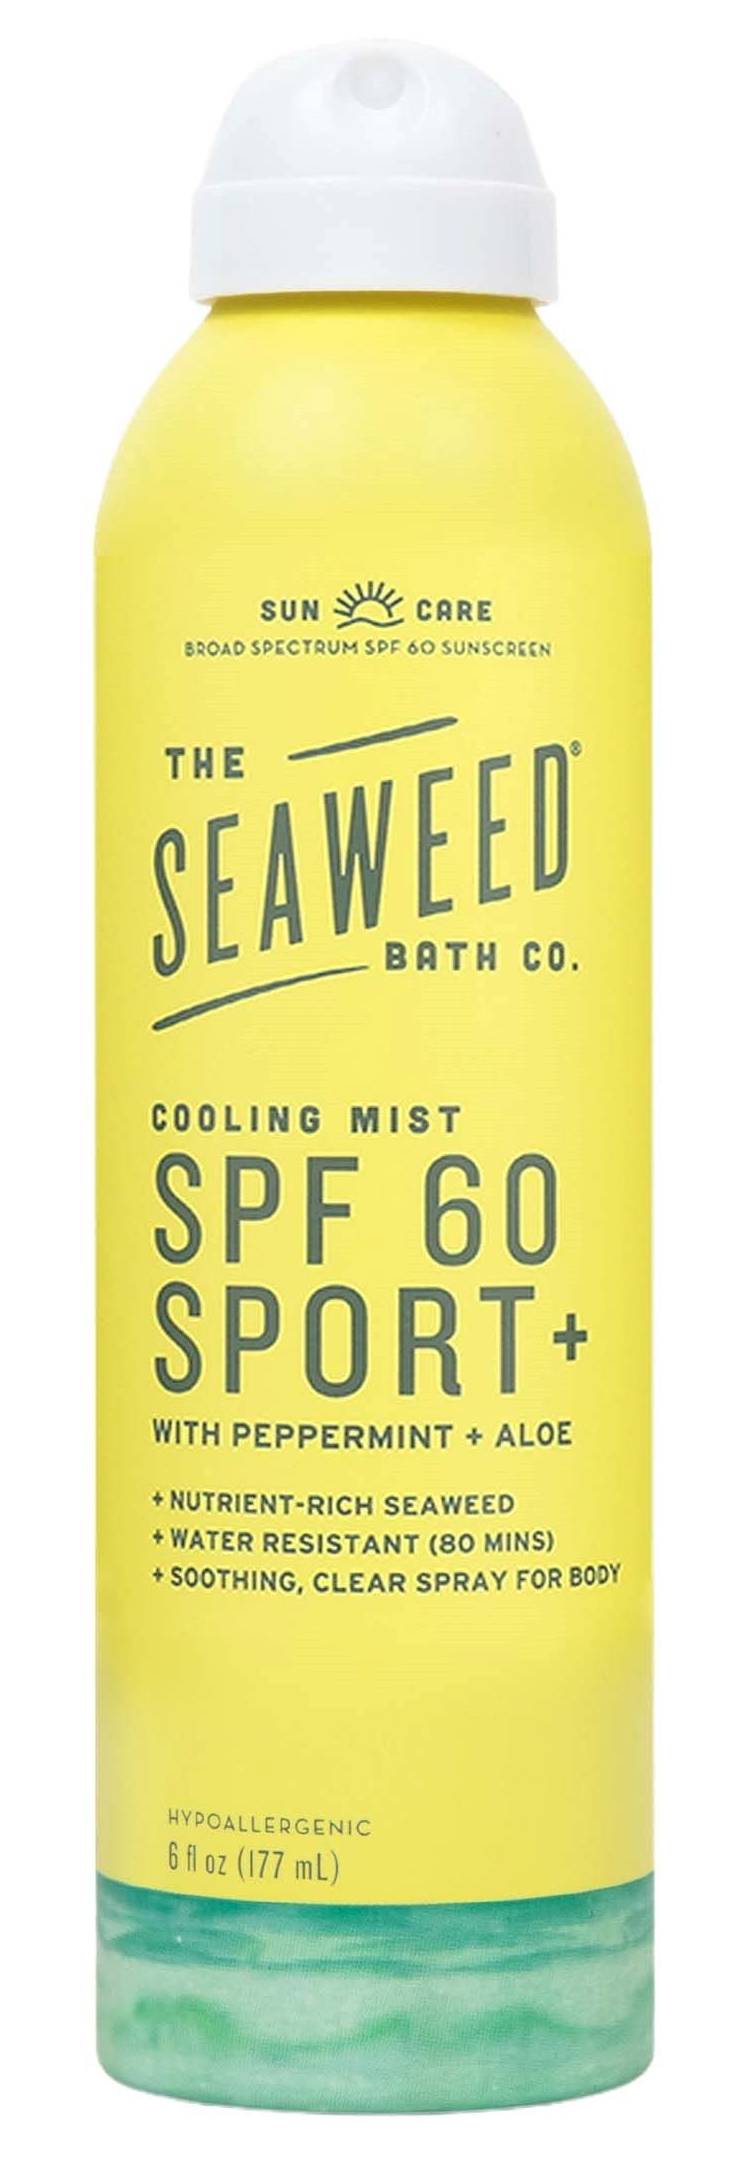 SEAWEED BATH CO: Cooling Mist SPF 60 Spray 6 OUNCE